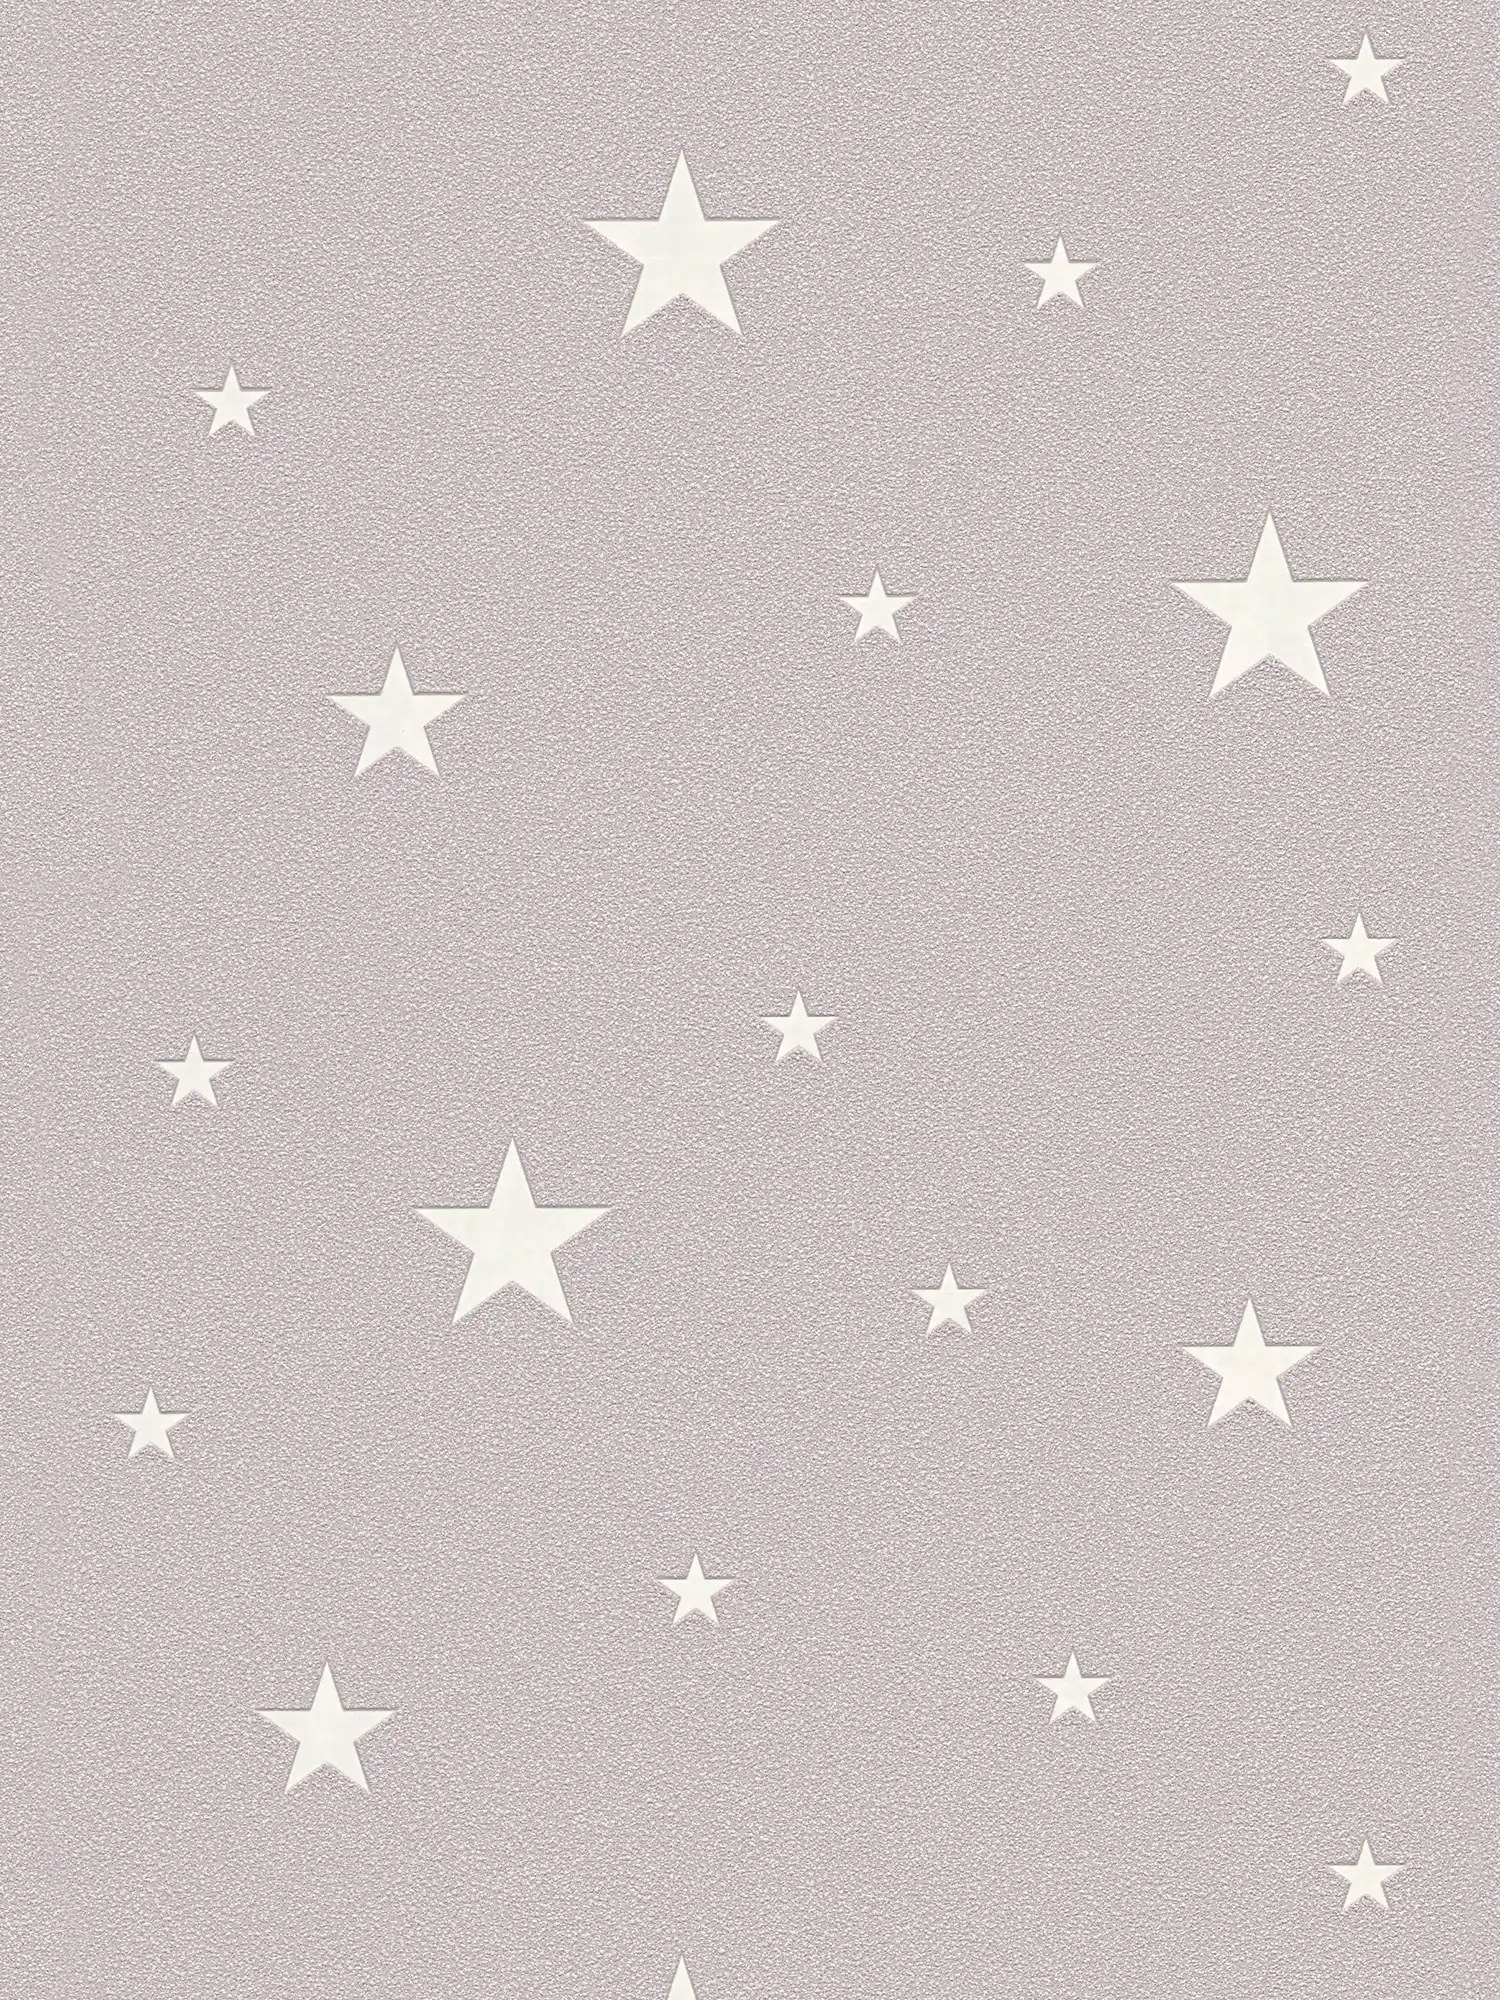 Glow-in-the-dark kinderkamer behang met lichtgevende sterren - taupe
